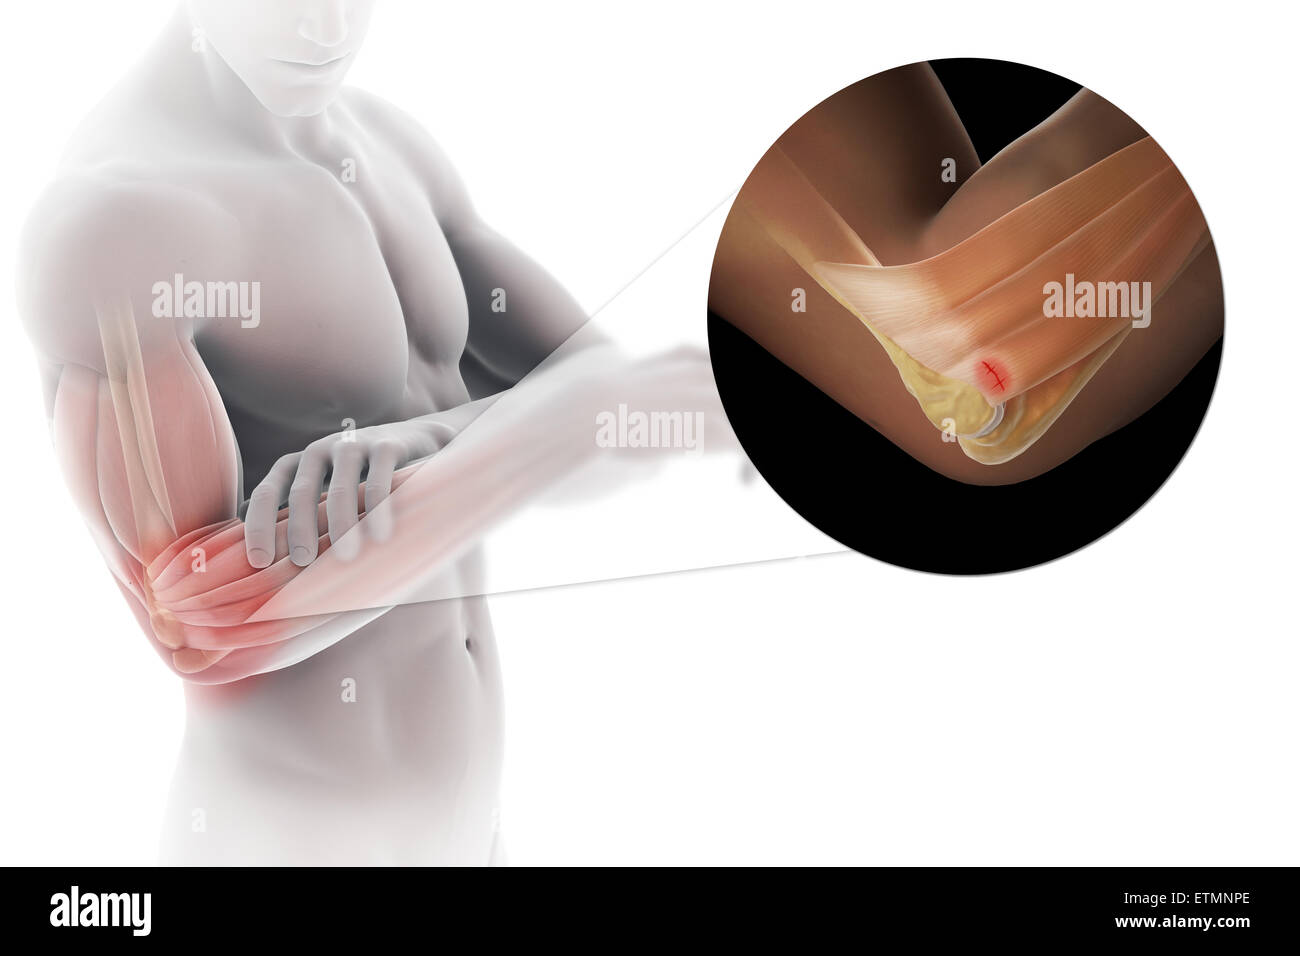 Ilustración del brazo con piel transparente para mostrar lesiones de tendón epicóndilo lateral, conocido como epicondilitis lateral o codo de tenista. Foto de stock